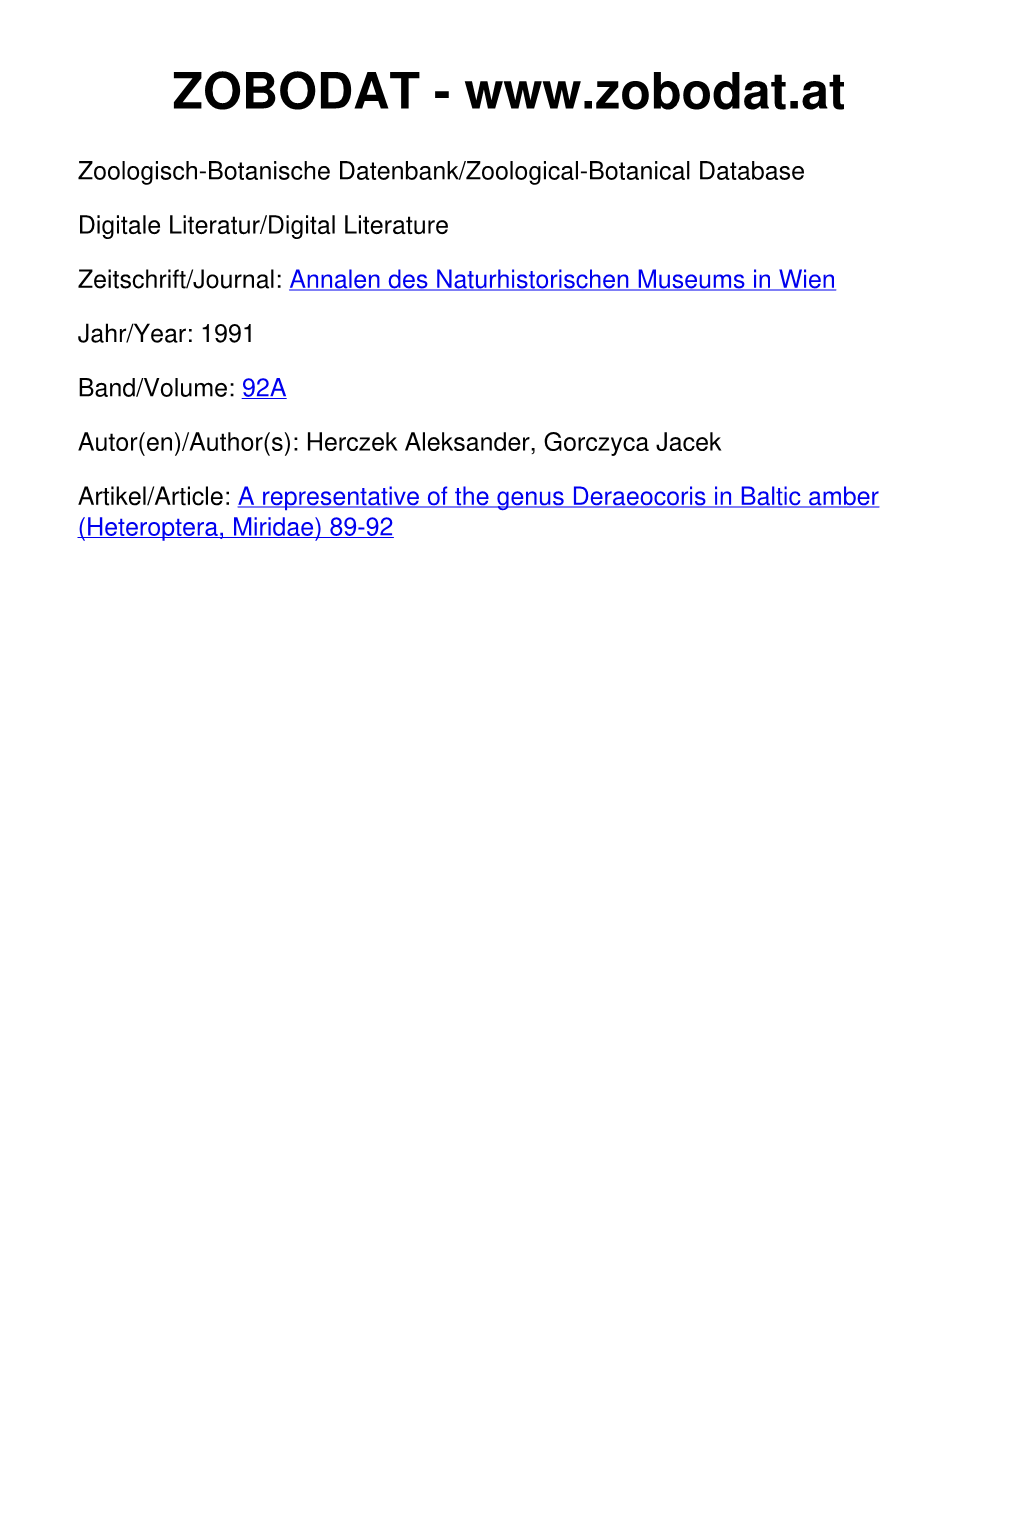 Heteroptera, Miridae) 89-92 ©Naturhistorisches Museum Wien, Download Unter